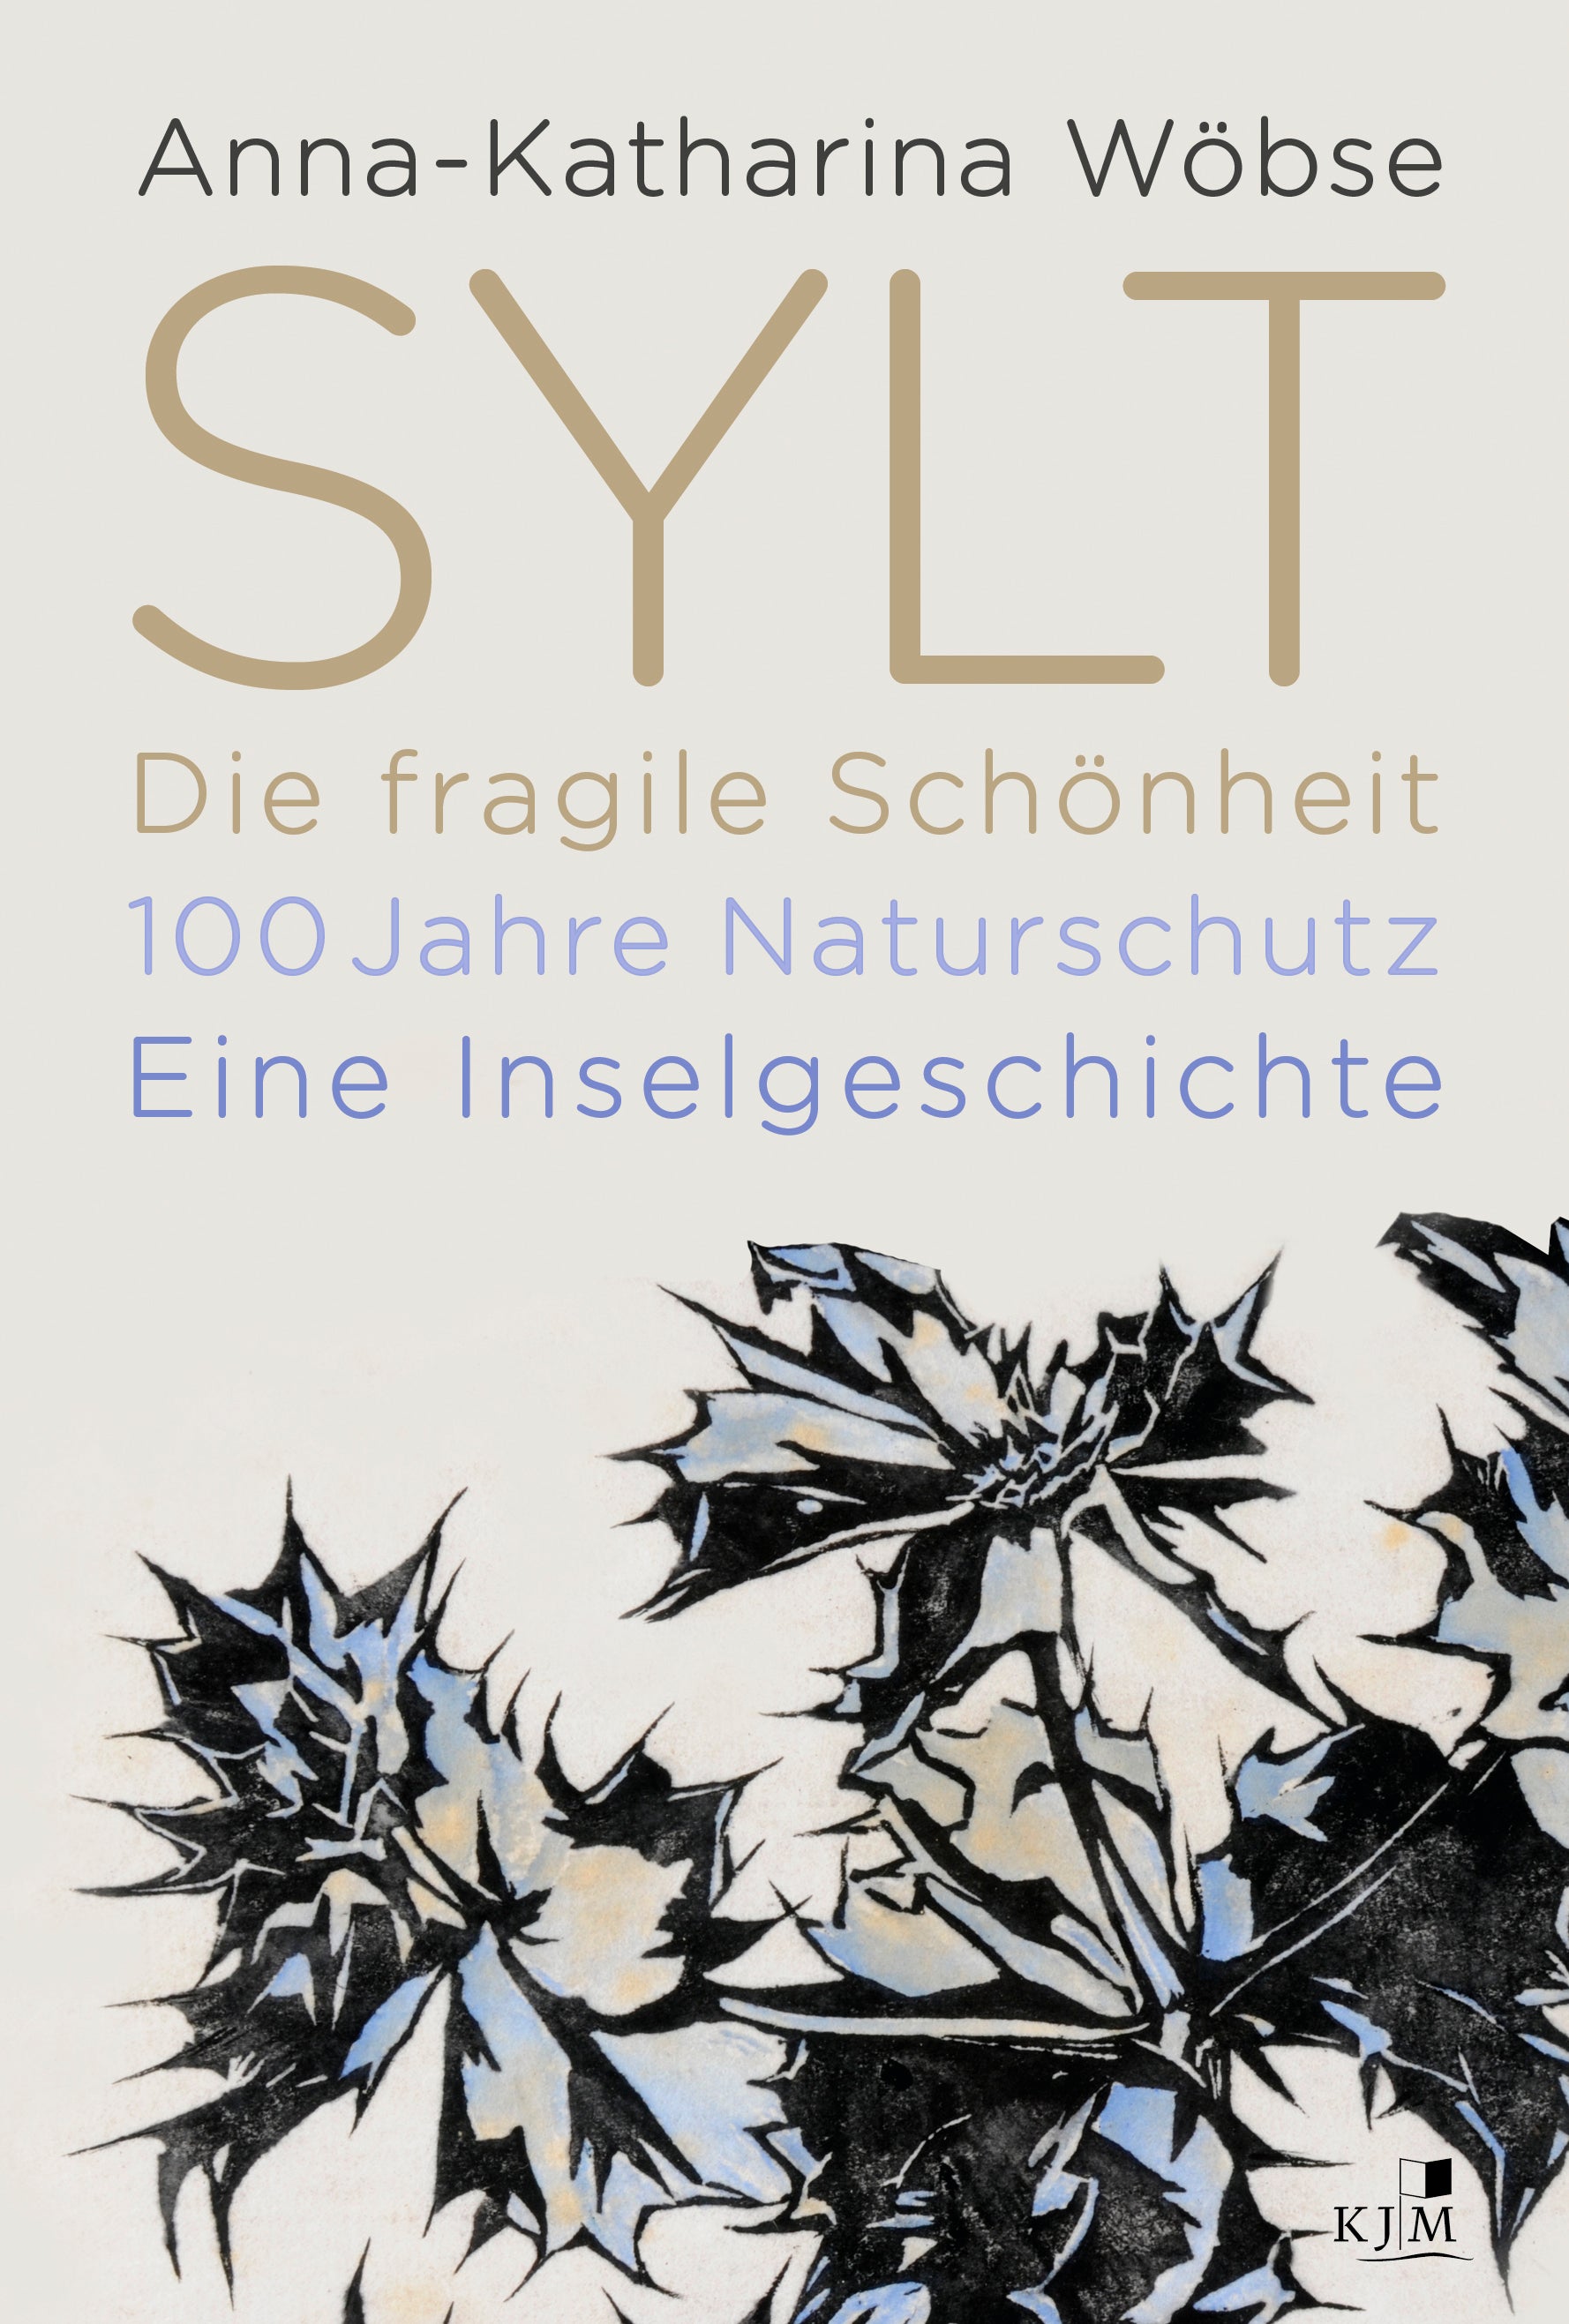 Sylt. Die fragile Schönheit - 100 Jahre Naturschutz